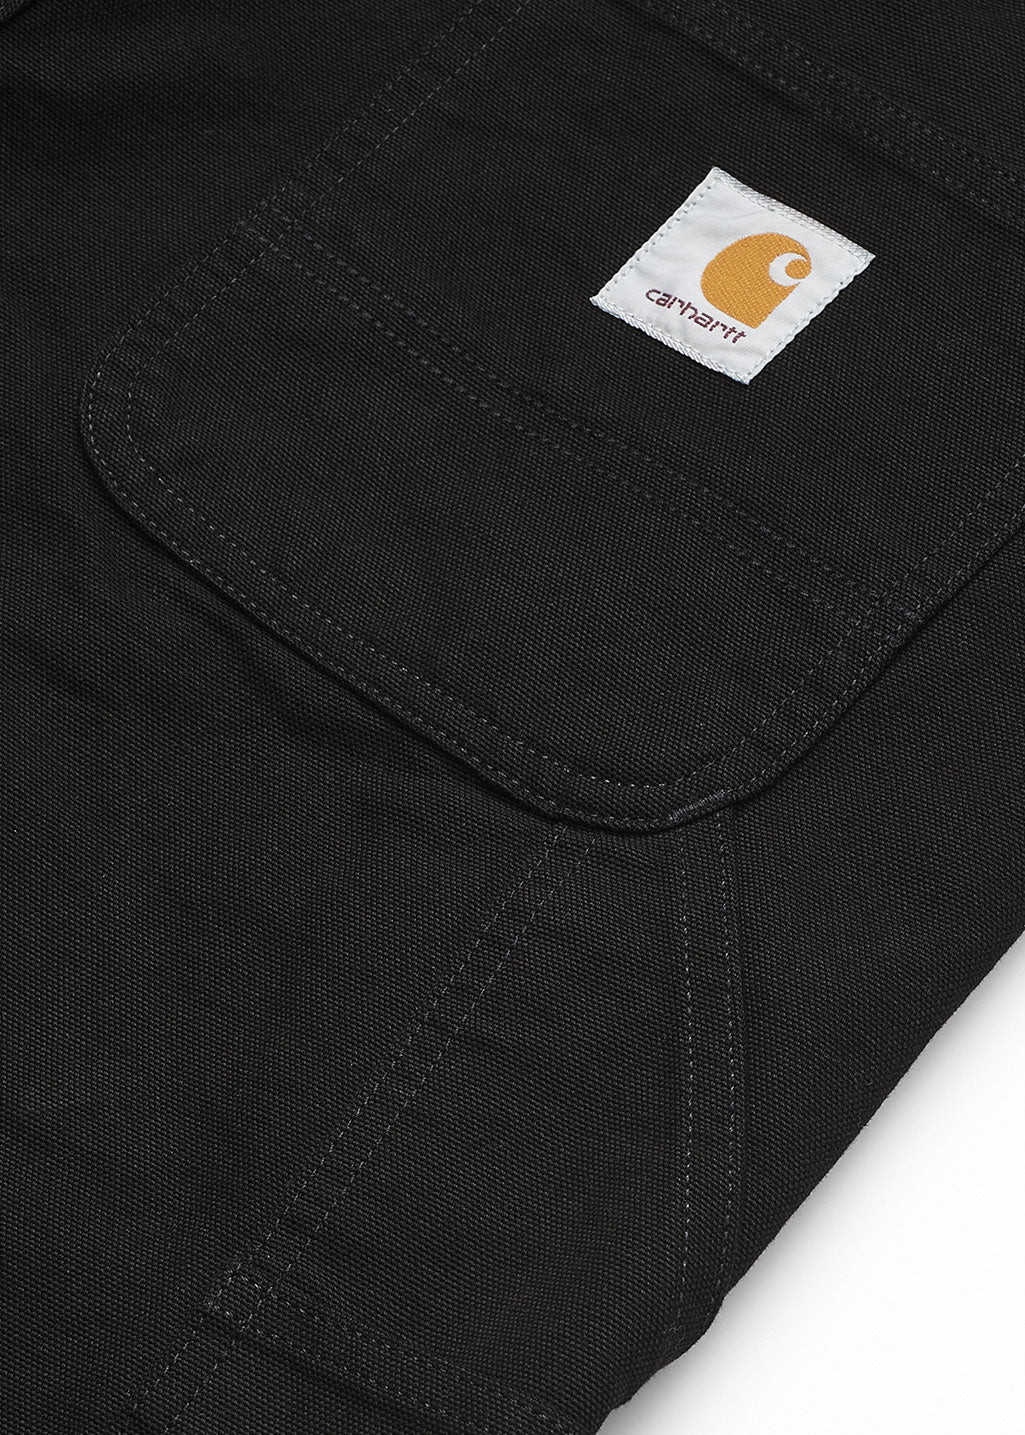 Carhartt WIP - Ruck Single Knee Pant - Black Rinsed - Hardpressed Print Studio